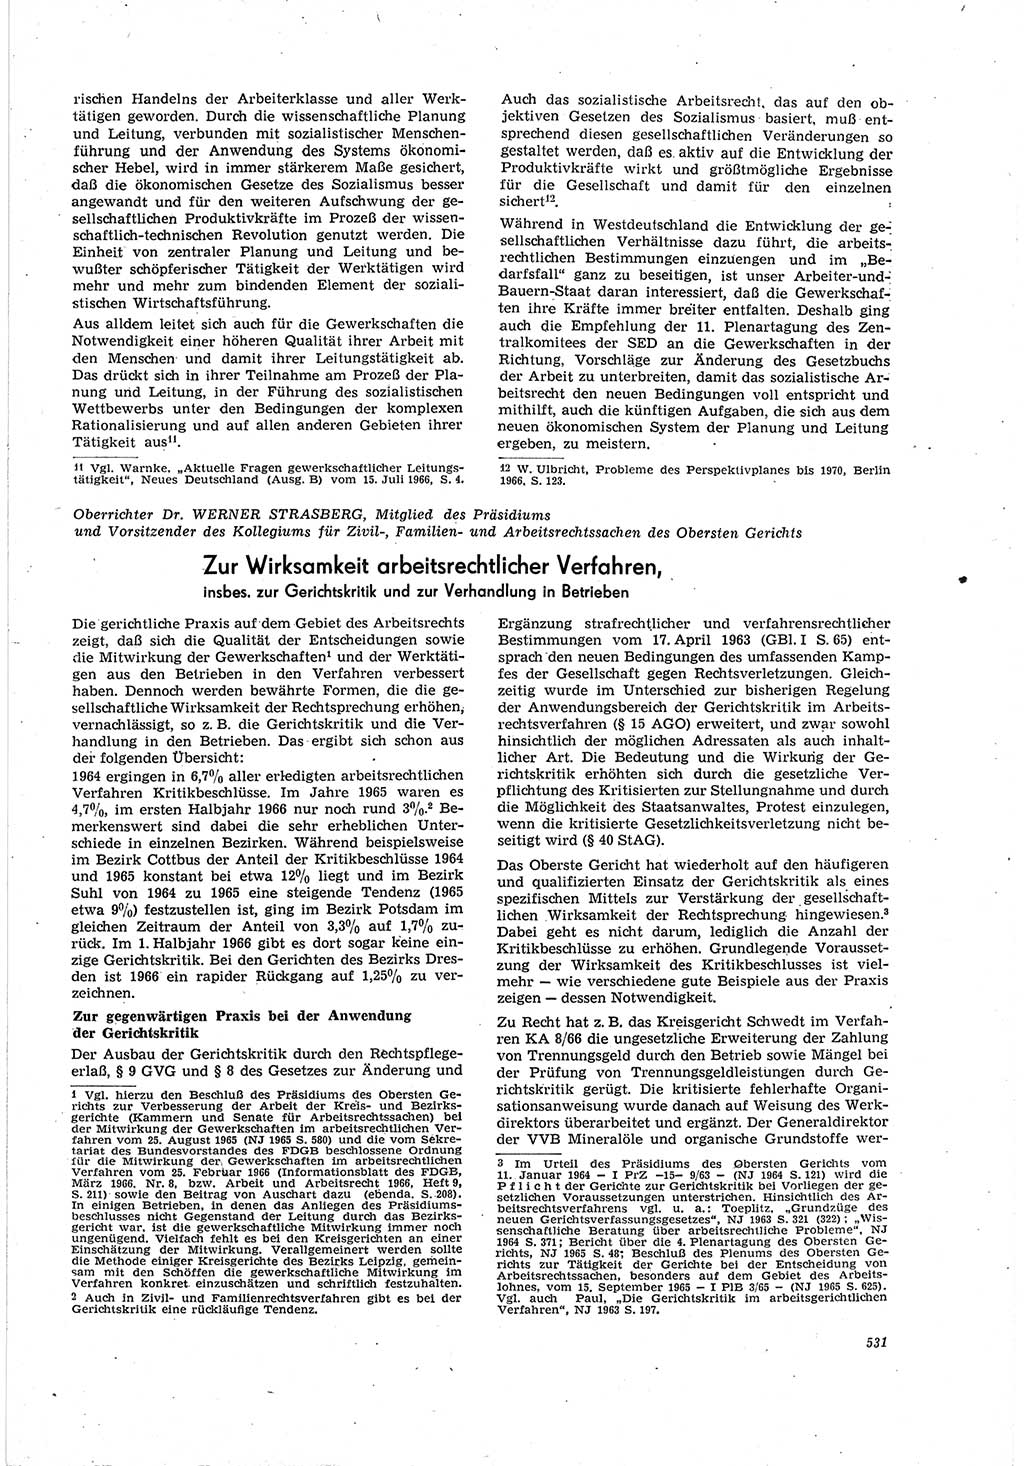 Neue Justiz (NJ), Zeitschrift für Recht und Rechtswissenschaft [Deutsche Demokratische Republik (DDR)], 20. Jahrgang 1966, Seite 531 (NJ DDR 1966, S. 531)